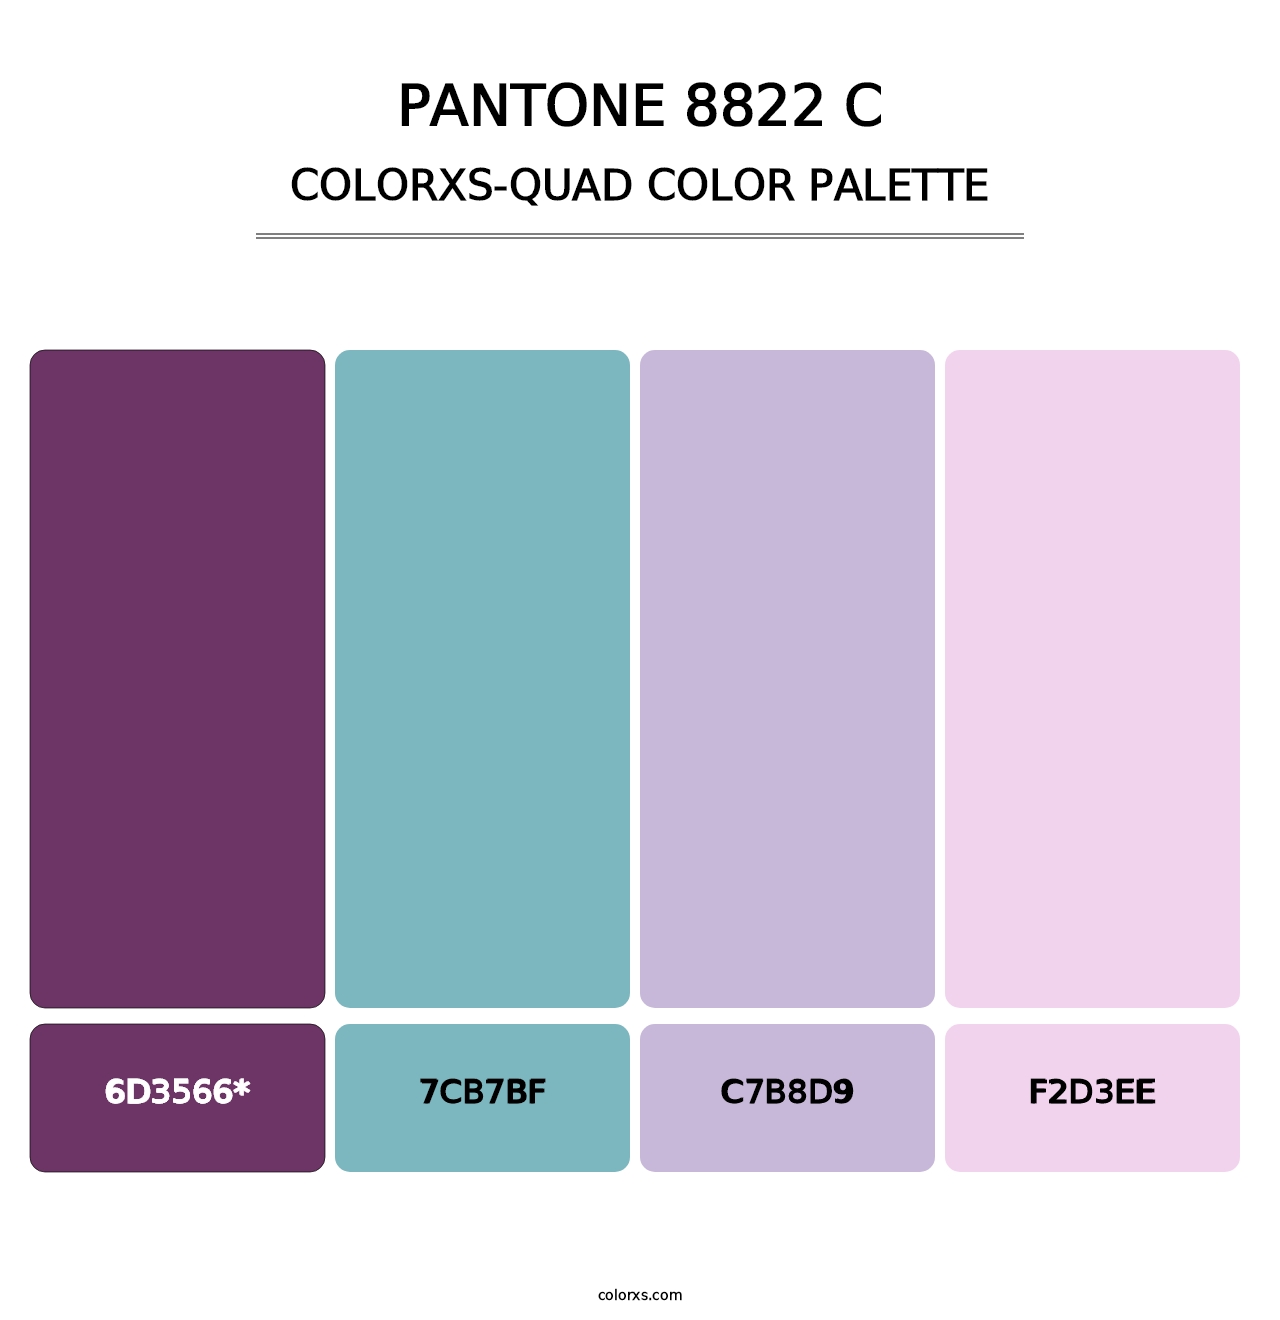 PANTONE 8822 C - Colorxs Quad Palette